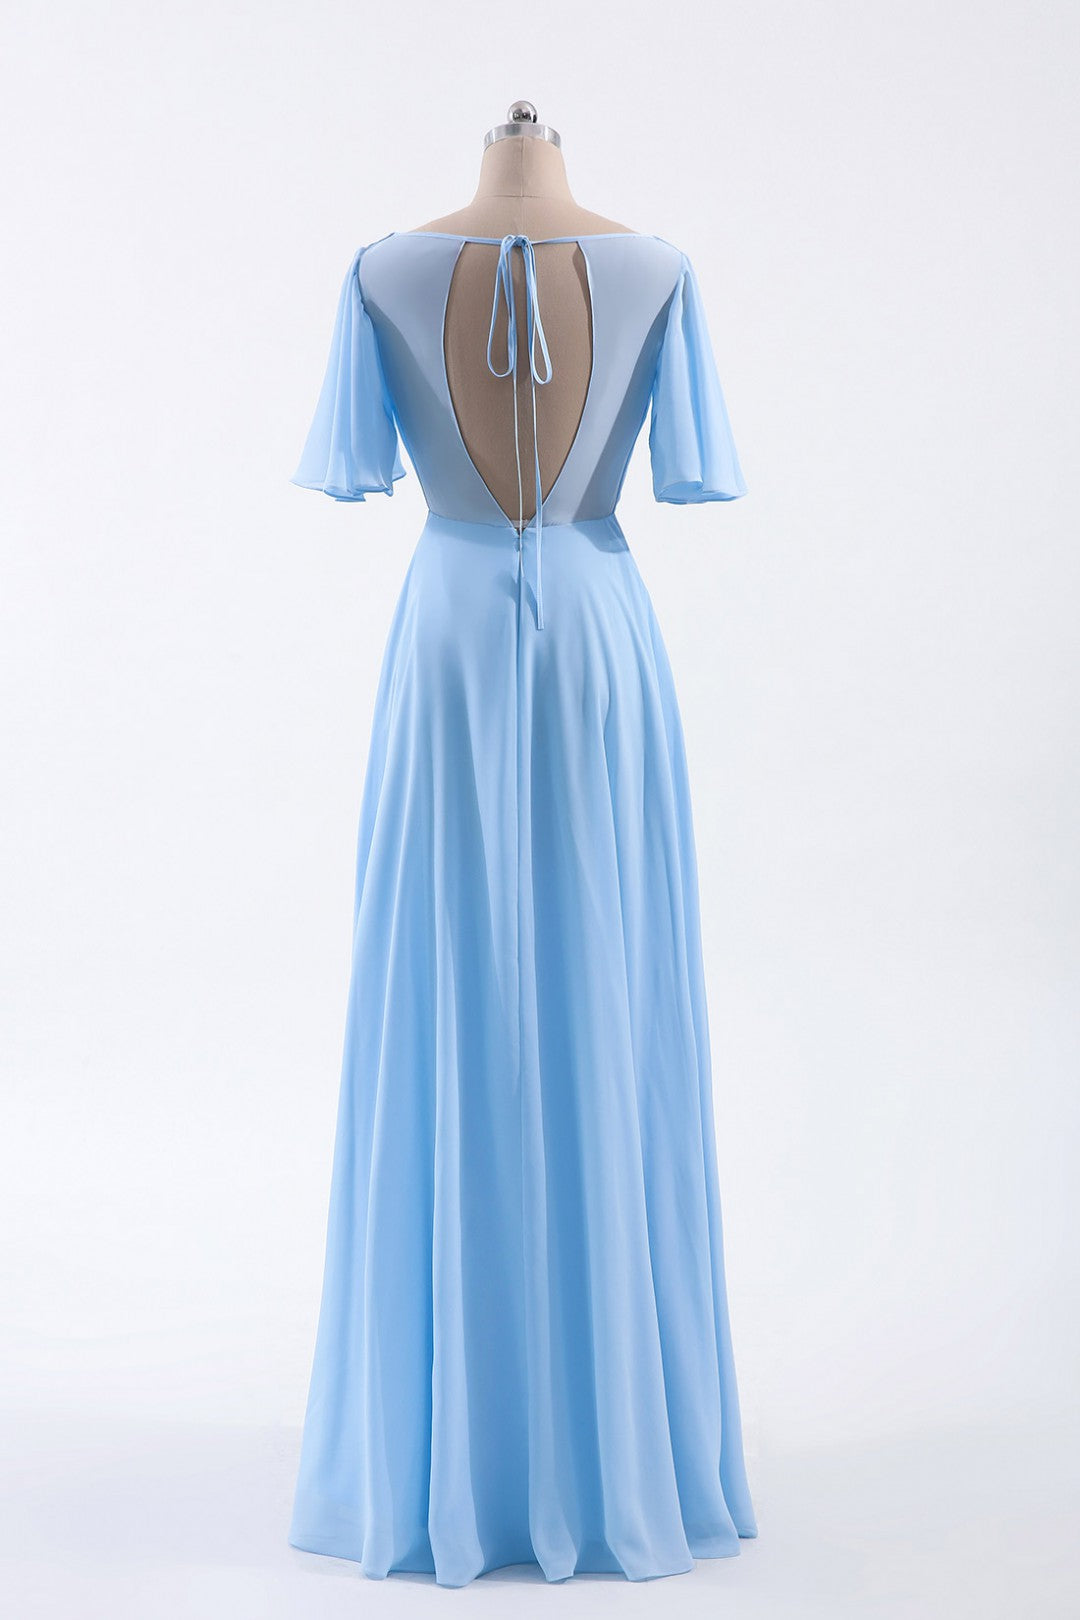 Flutter Sleeves Blue Chiffon A-line Long Bridesmaid Dress